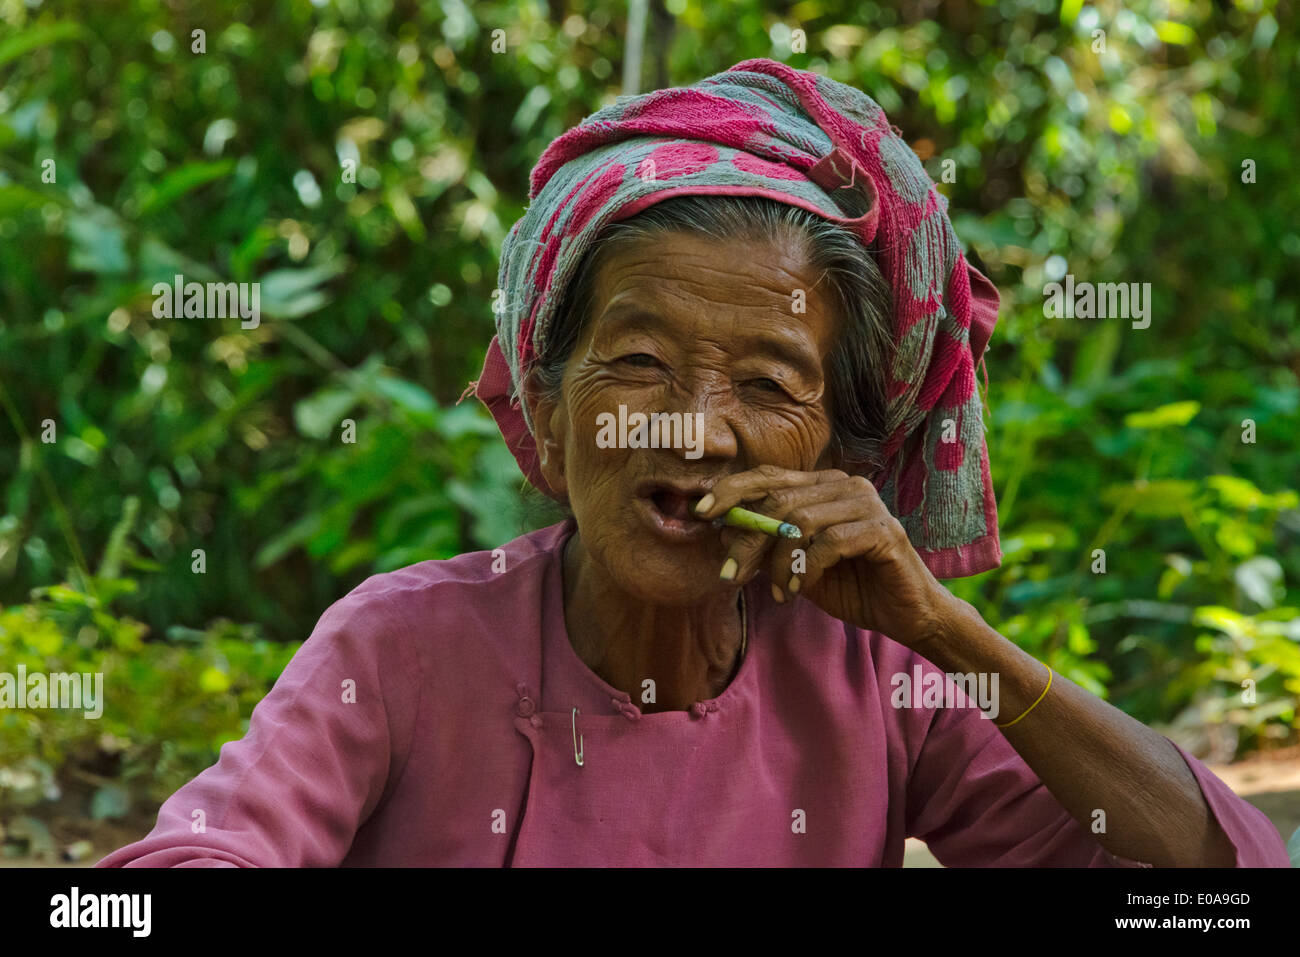 Pa-O woman smoking, Inle Lake, Shan State, Myanmar Stock Photo